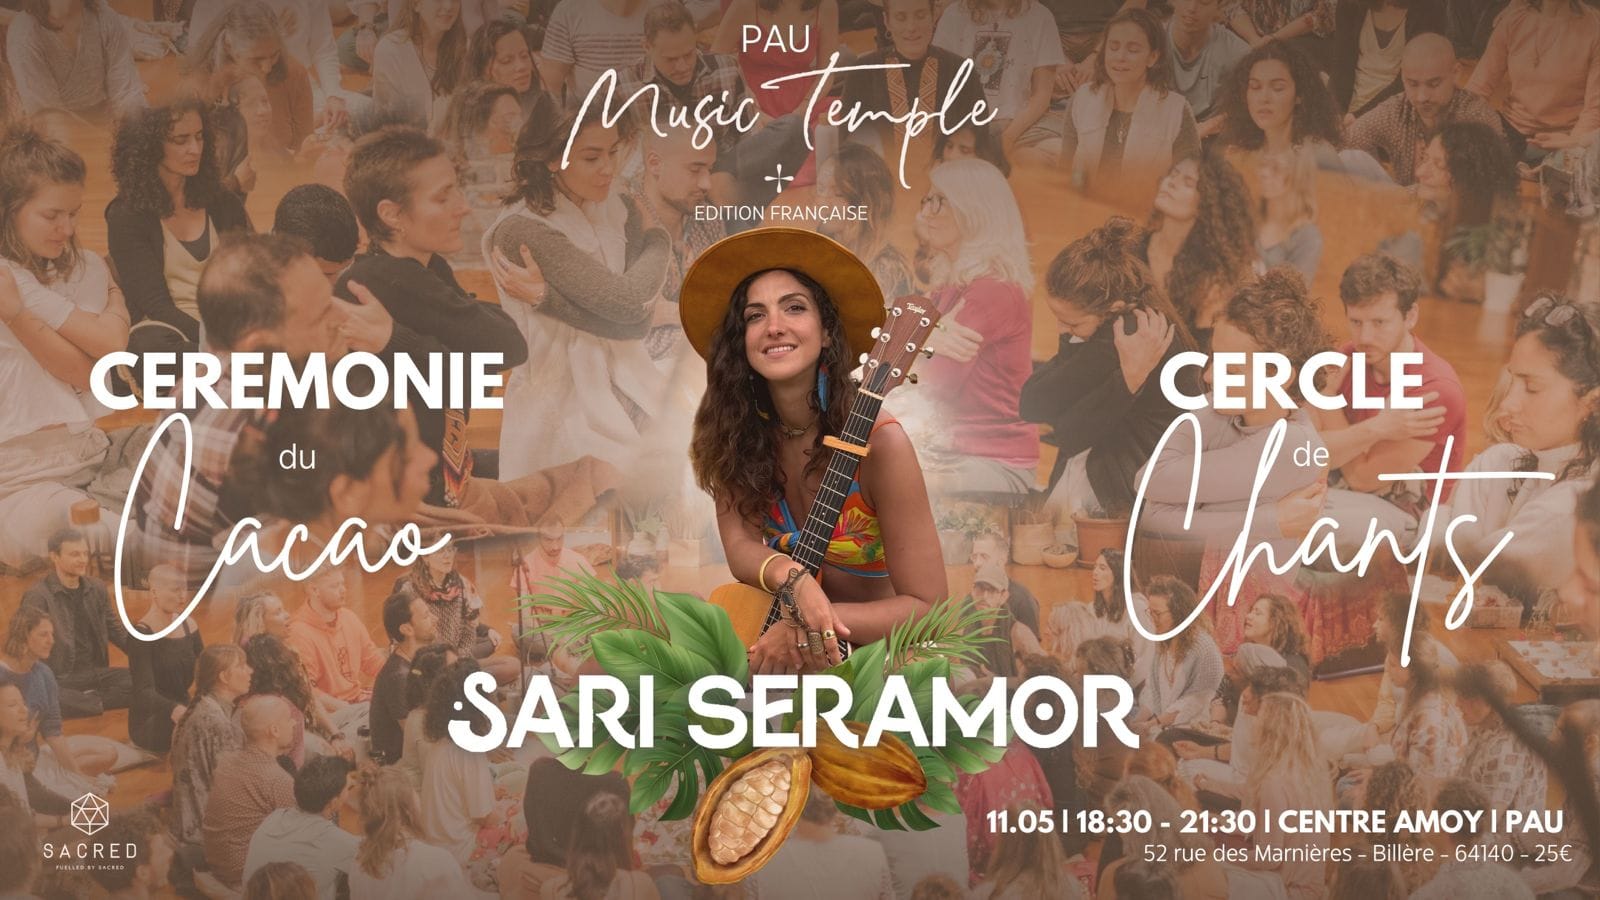 Pau Music Temple | Ceremonie du Cacao | Cercle ...